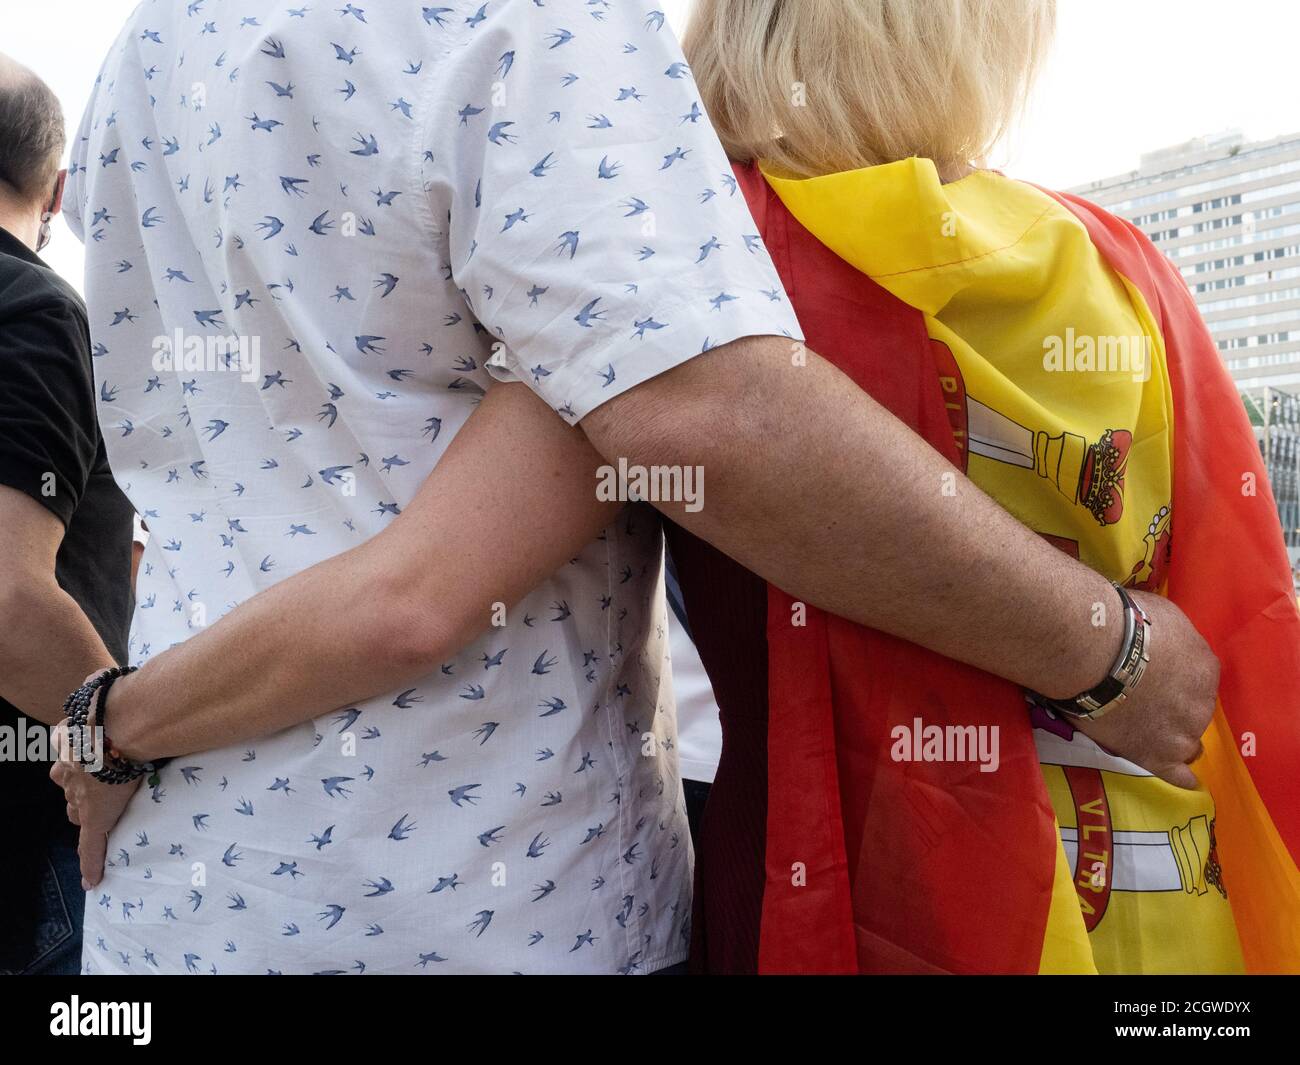 Madrid, Espagne. 12 septembre 2020. Un couple s'embrassant sur la place Colon lors de la manifestation contre le gouvernement espagnol. © Valentin Sama-Rojo/Alamy Live News. Banque D'Images